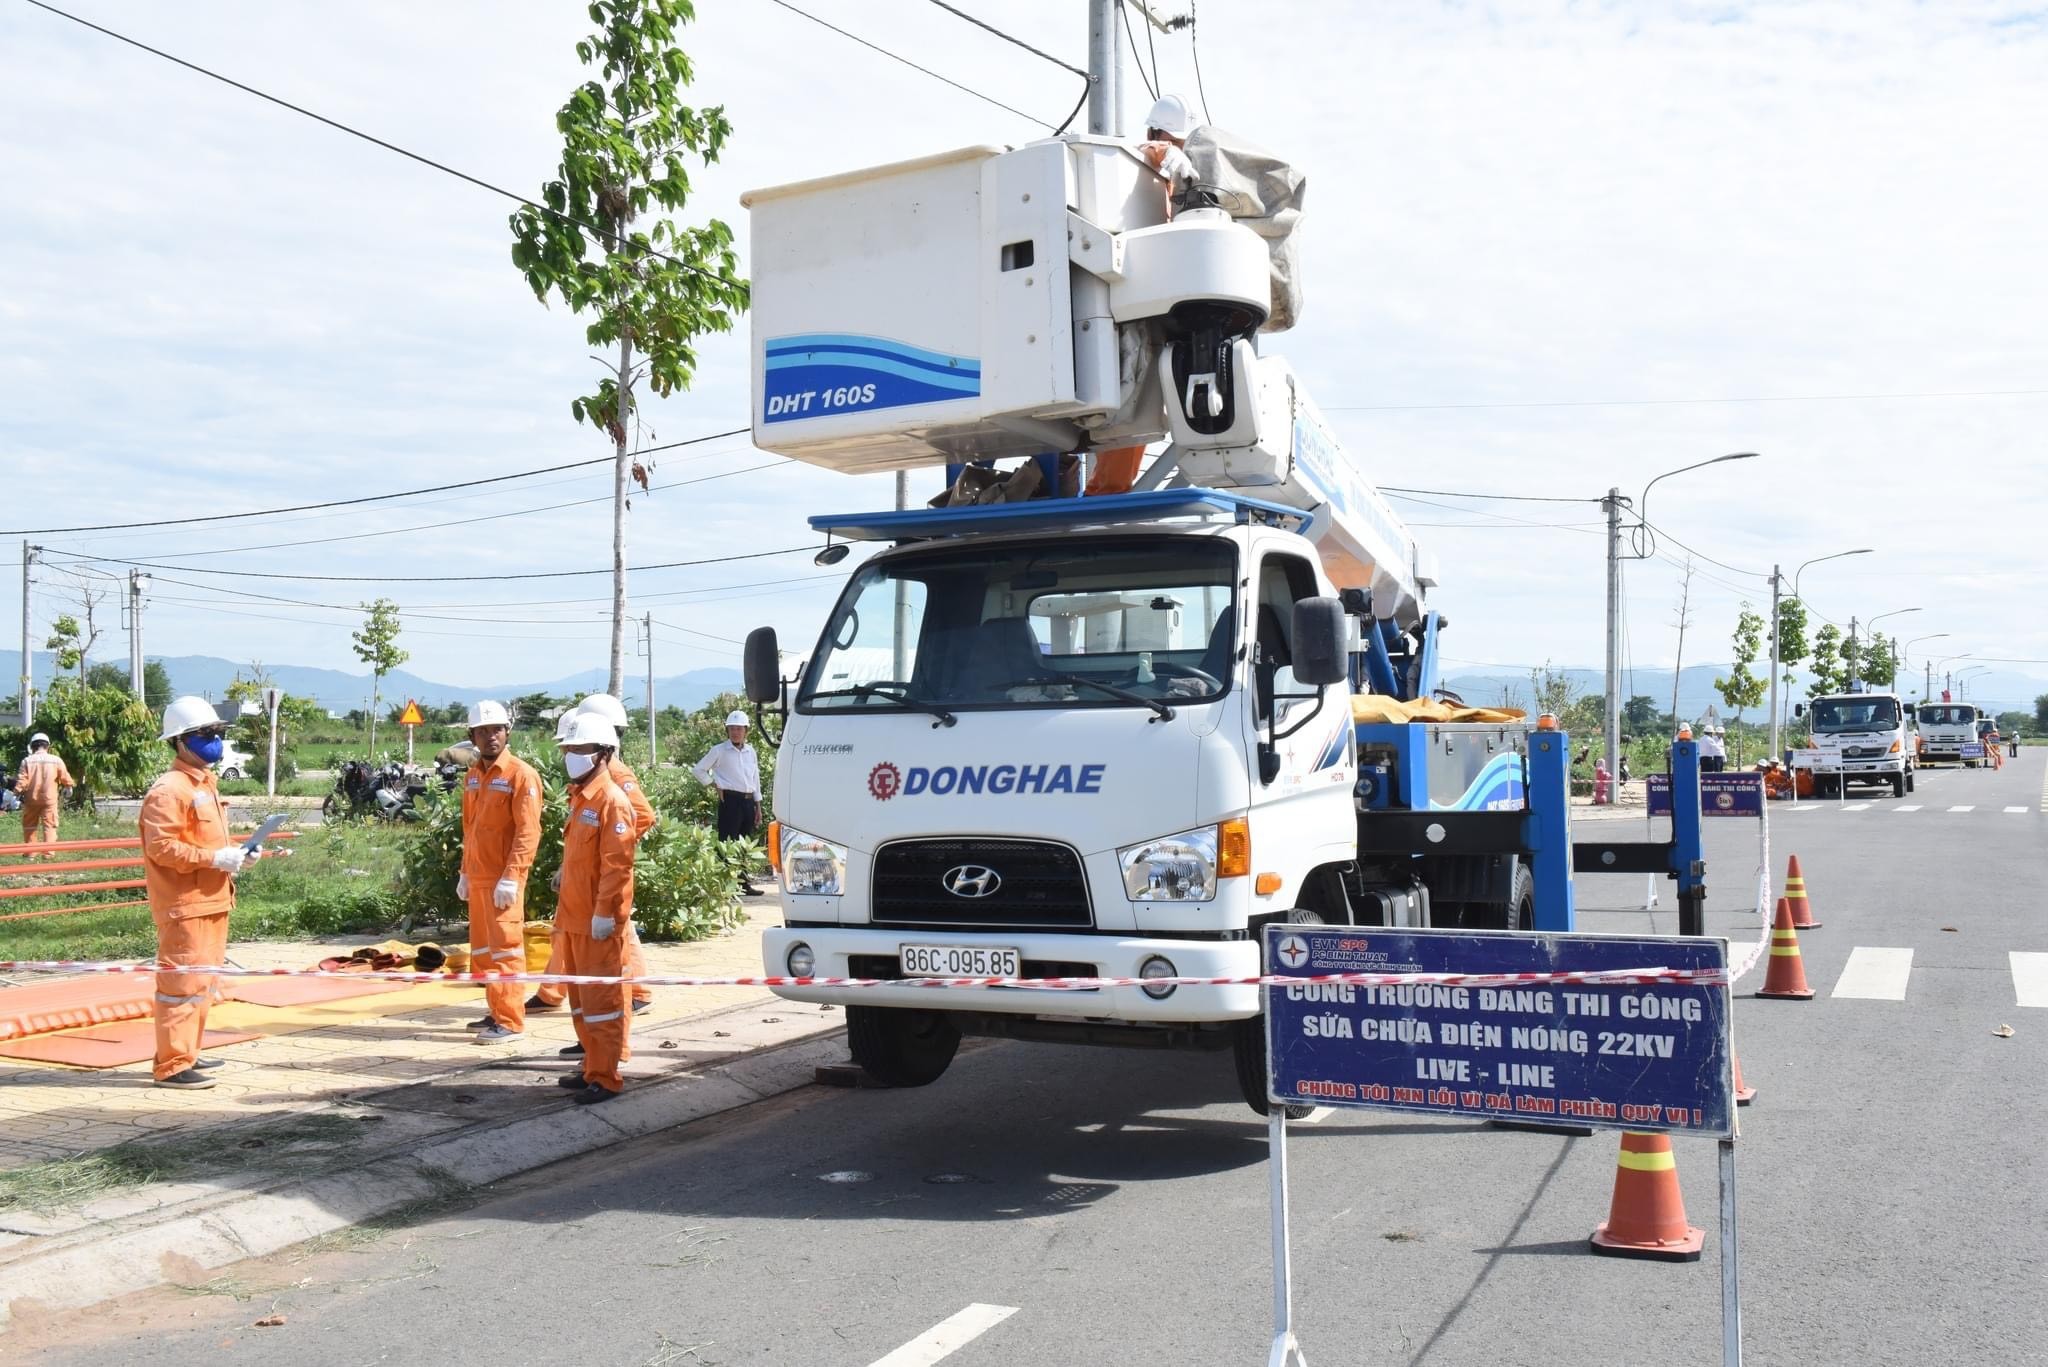 Dân sinh - Cúp điện, giá điện tăng cao không rõ lý do, Điện lực Bình Thuận nói gì?